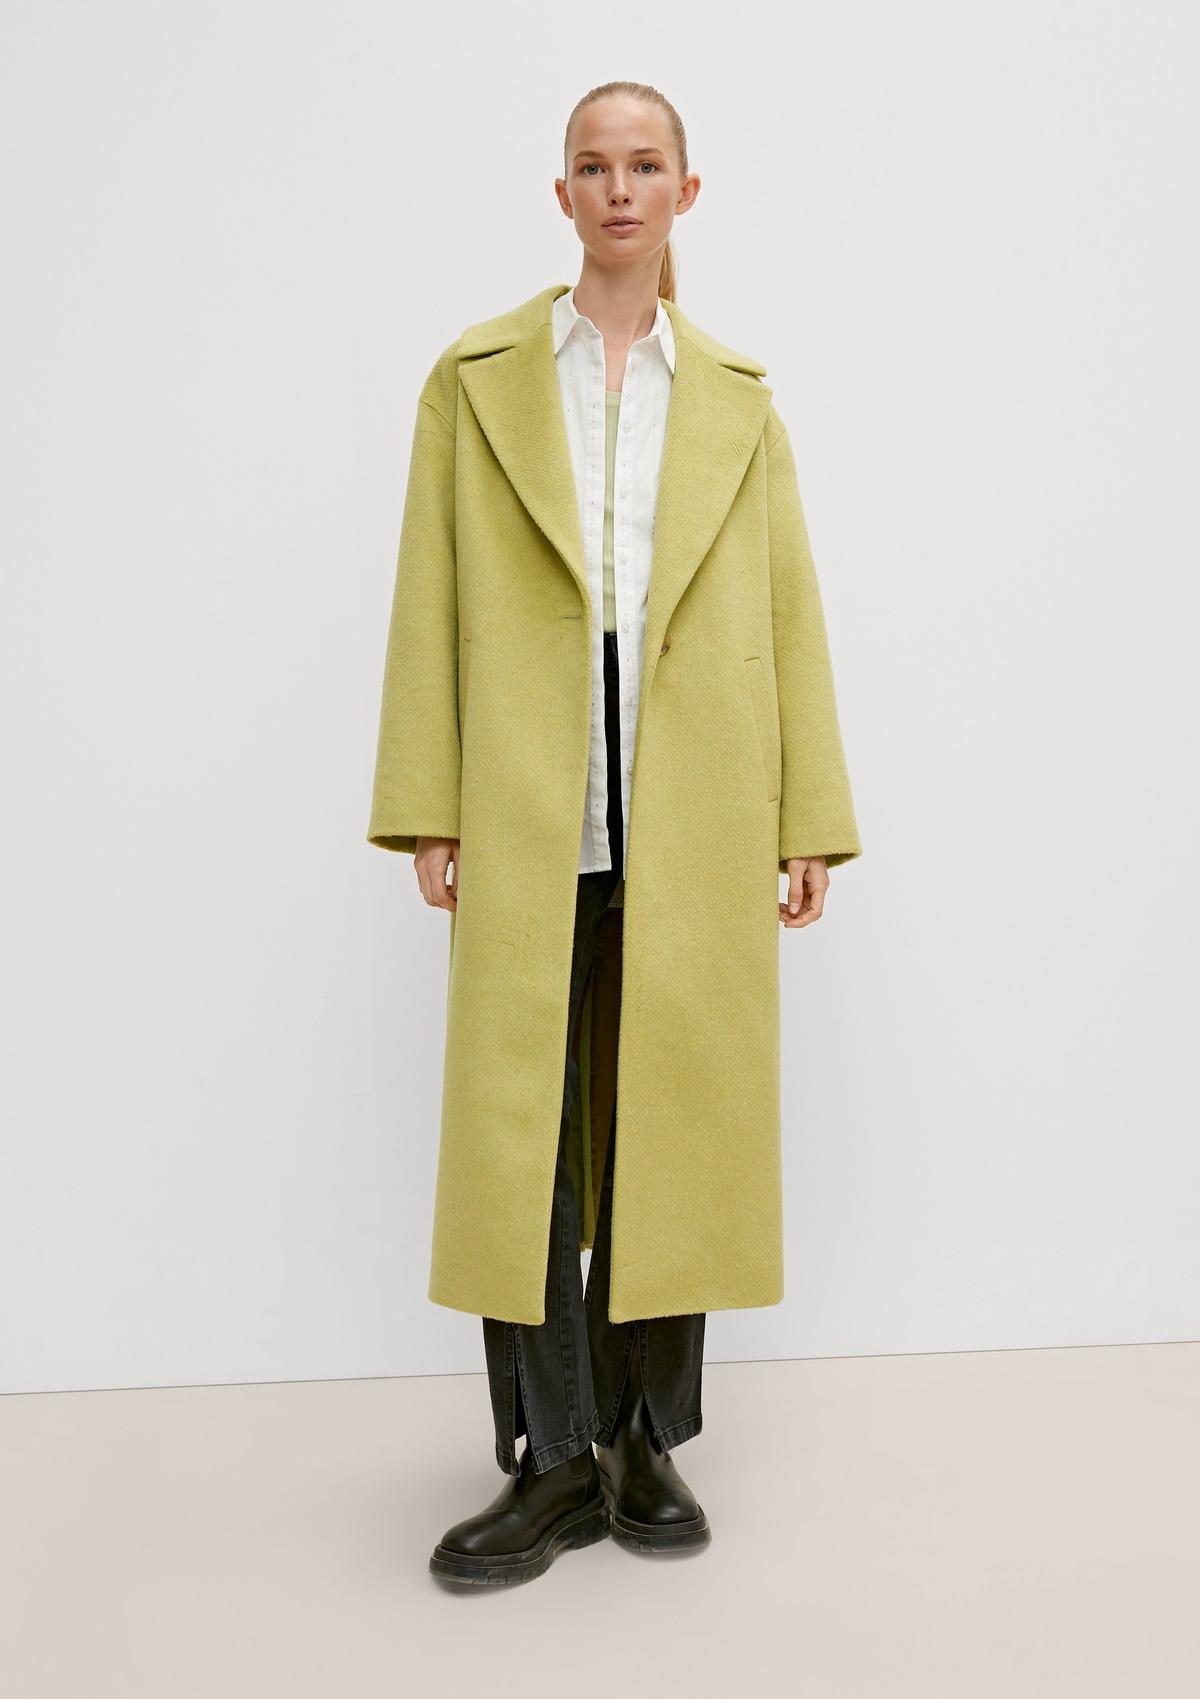 Wool blend coat